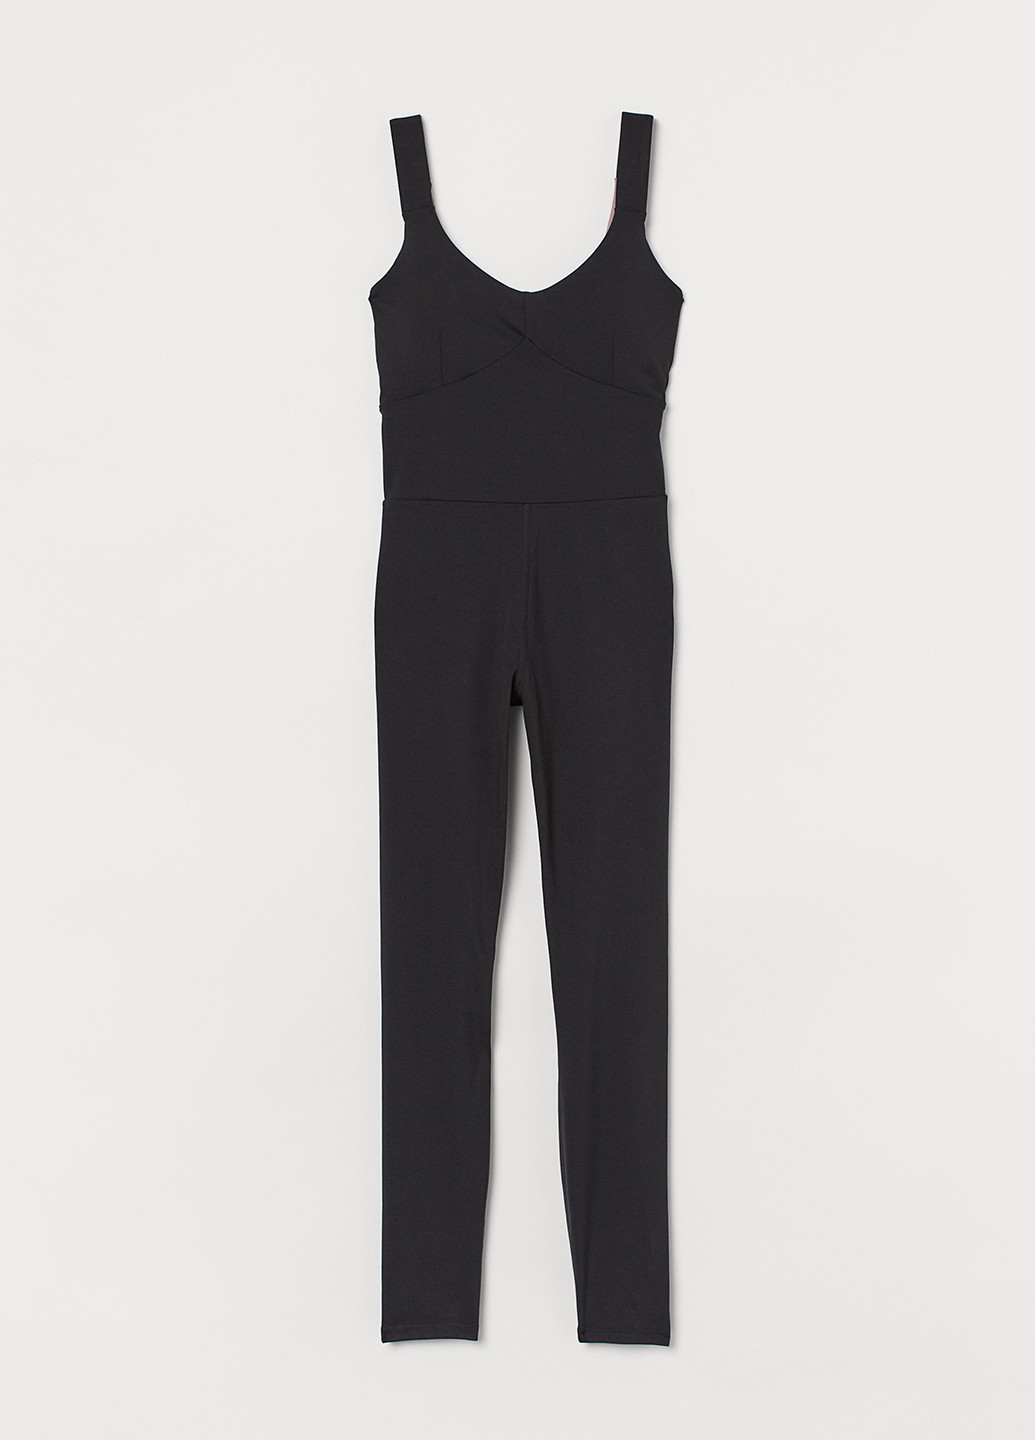 Комбинезон H&M комбинезон-брюки однотонный чёрный спортивный полиэстер